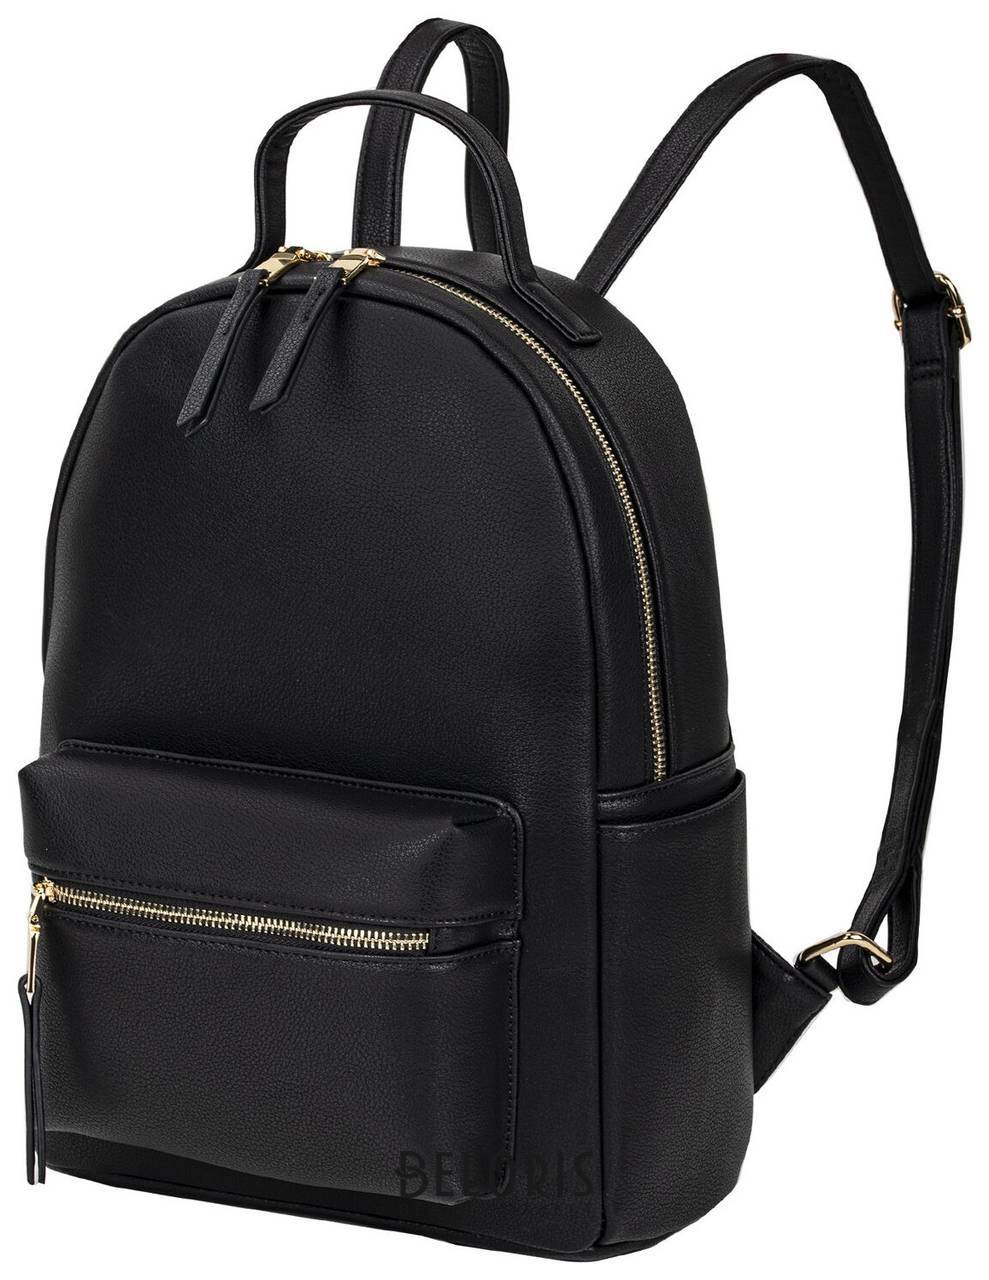 Рюкзак из экокожи Brauberg Podium женский, с отделением для планшета, черный, 34x25x13 см, 270817 Brauberg